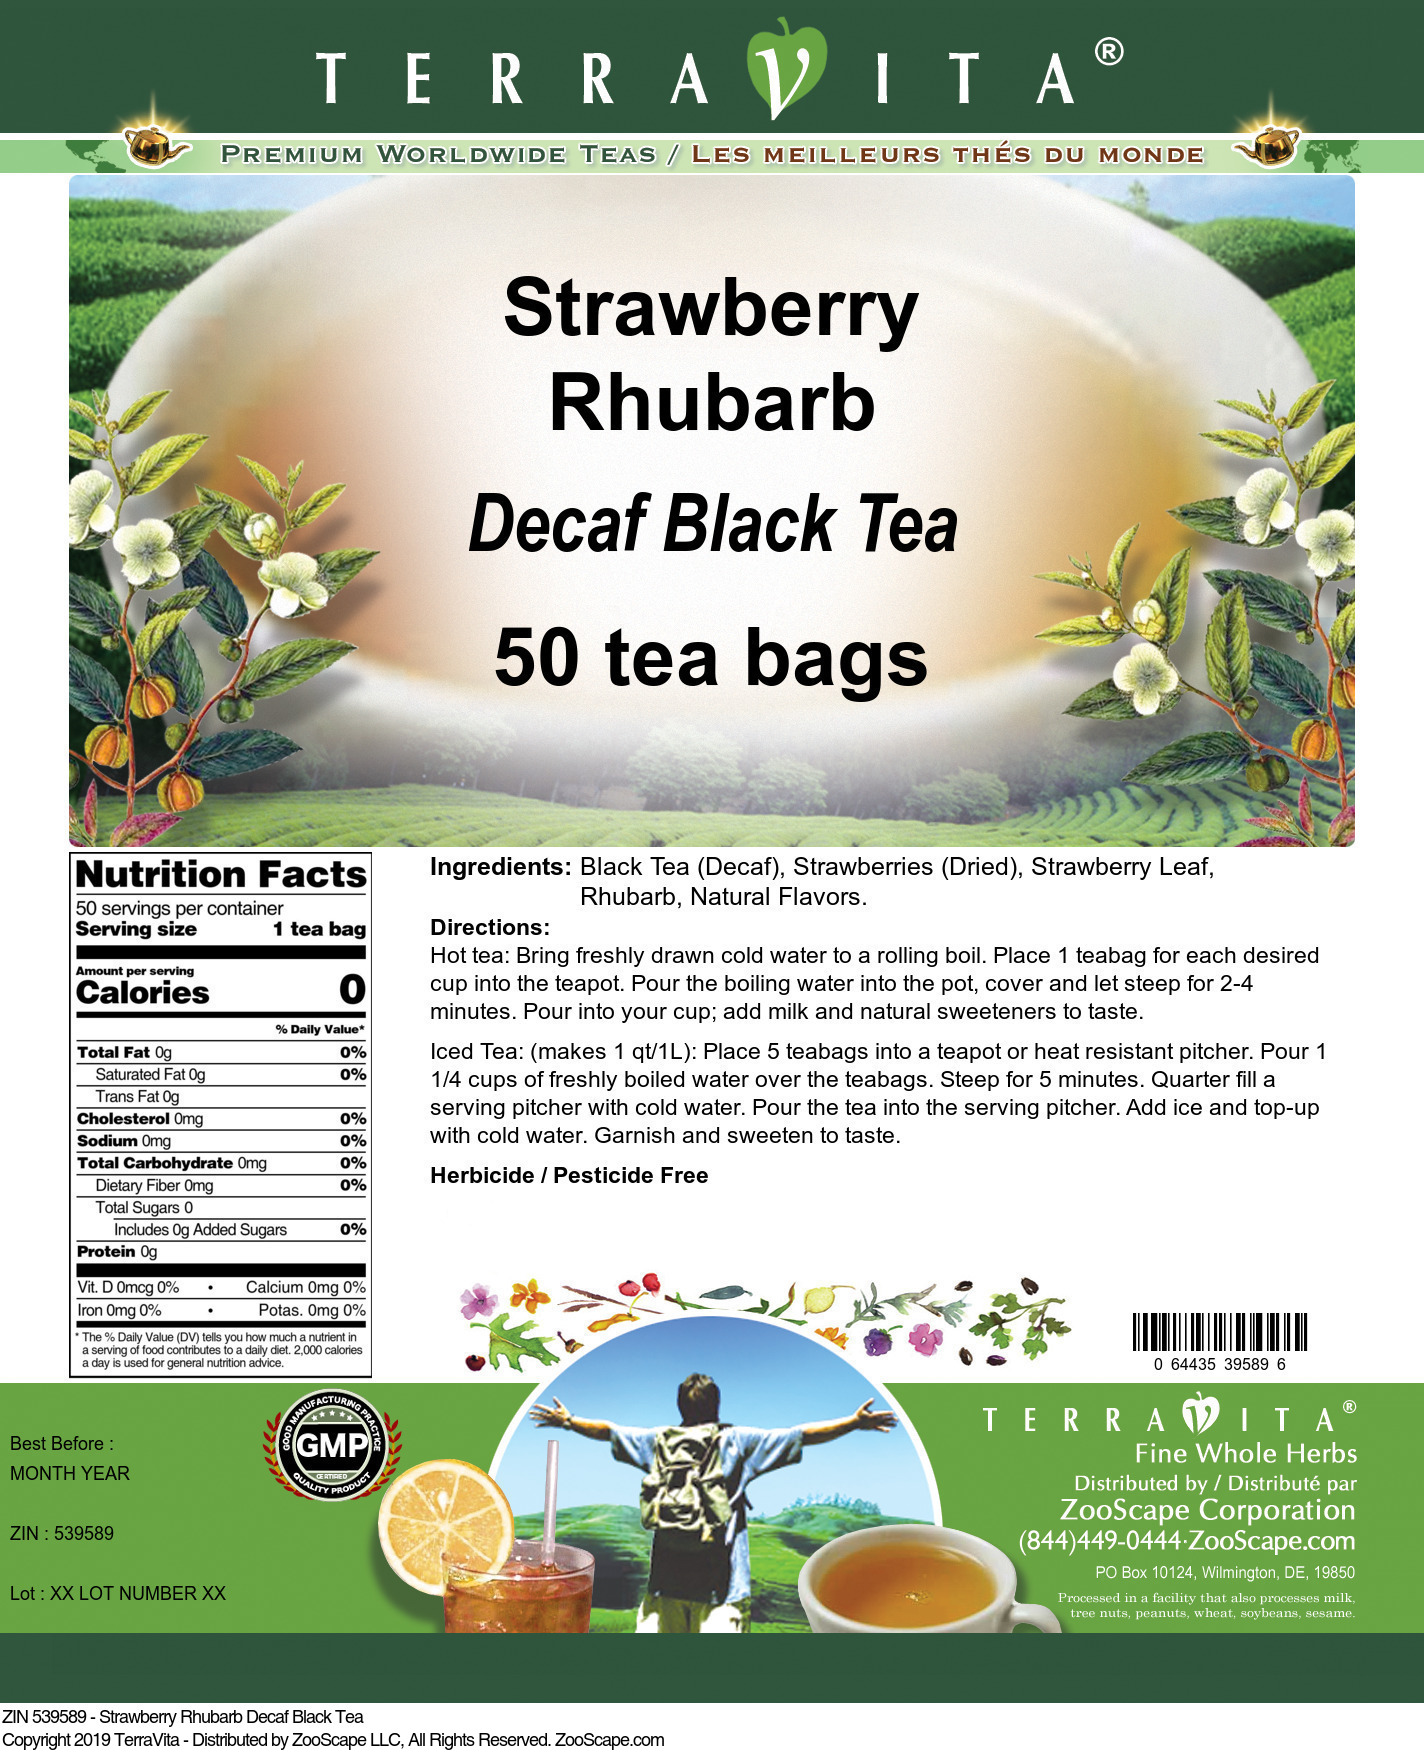 Strawberry Rhubarb Decaf Black Tea - Label